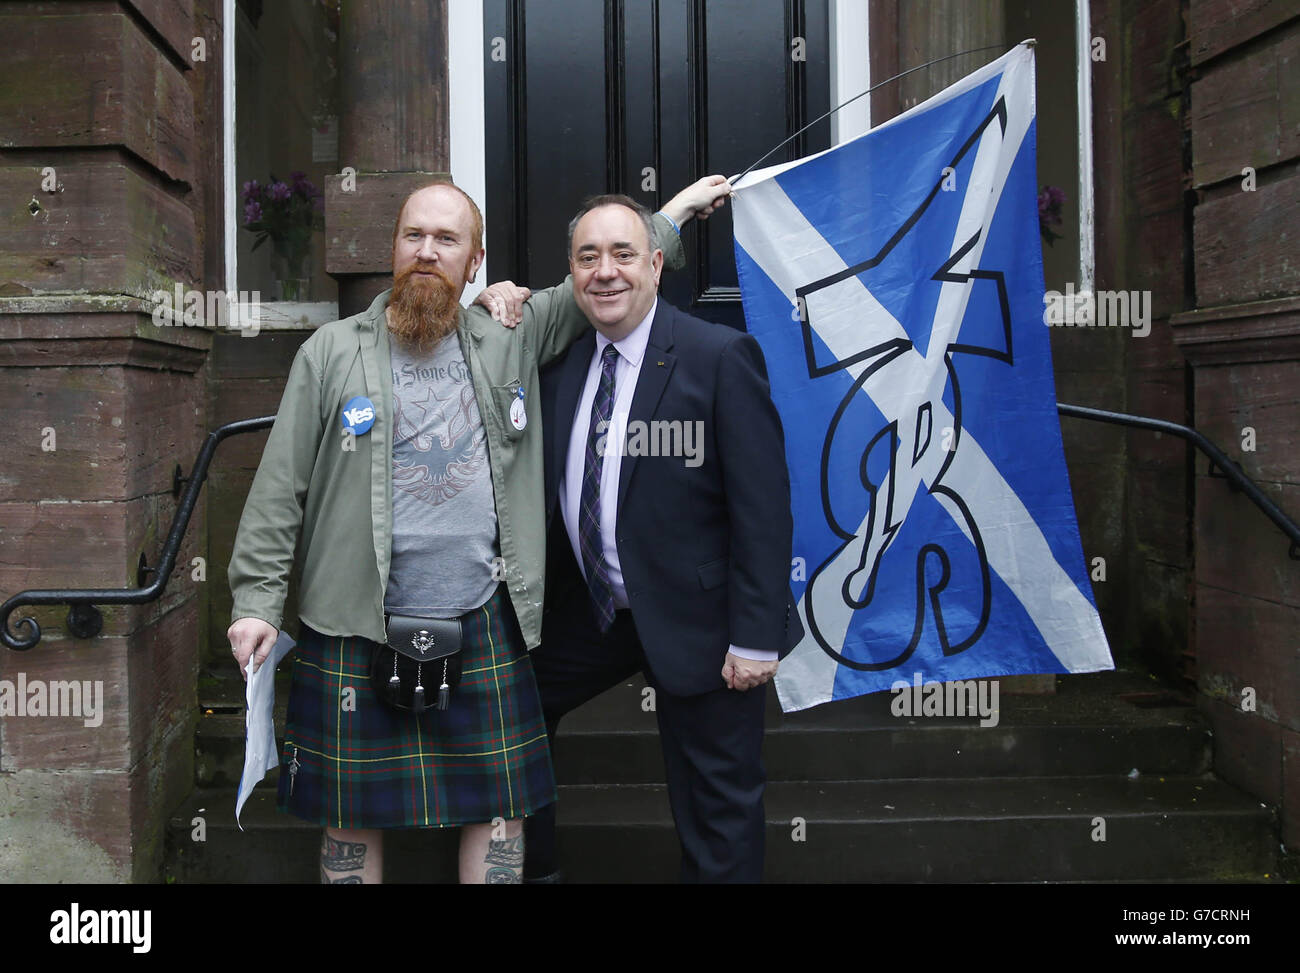 Il primo ministro scozzese Alex Salmond ha con un Sì sostenitore a Turriff durante un giorno storico per la Scozia, in quanto gli elettori determinano se il paese dovrebbe rimanere parte del Regno Unito. Foto Stock